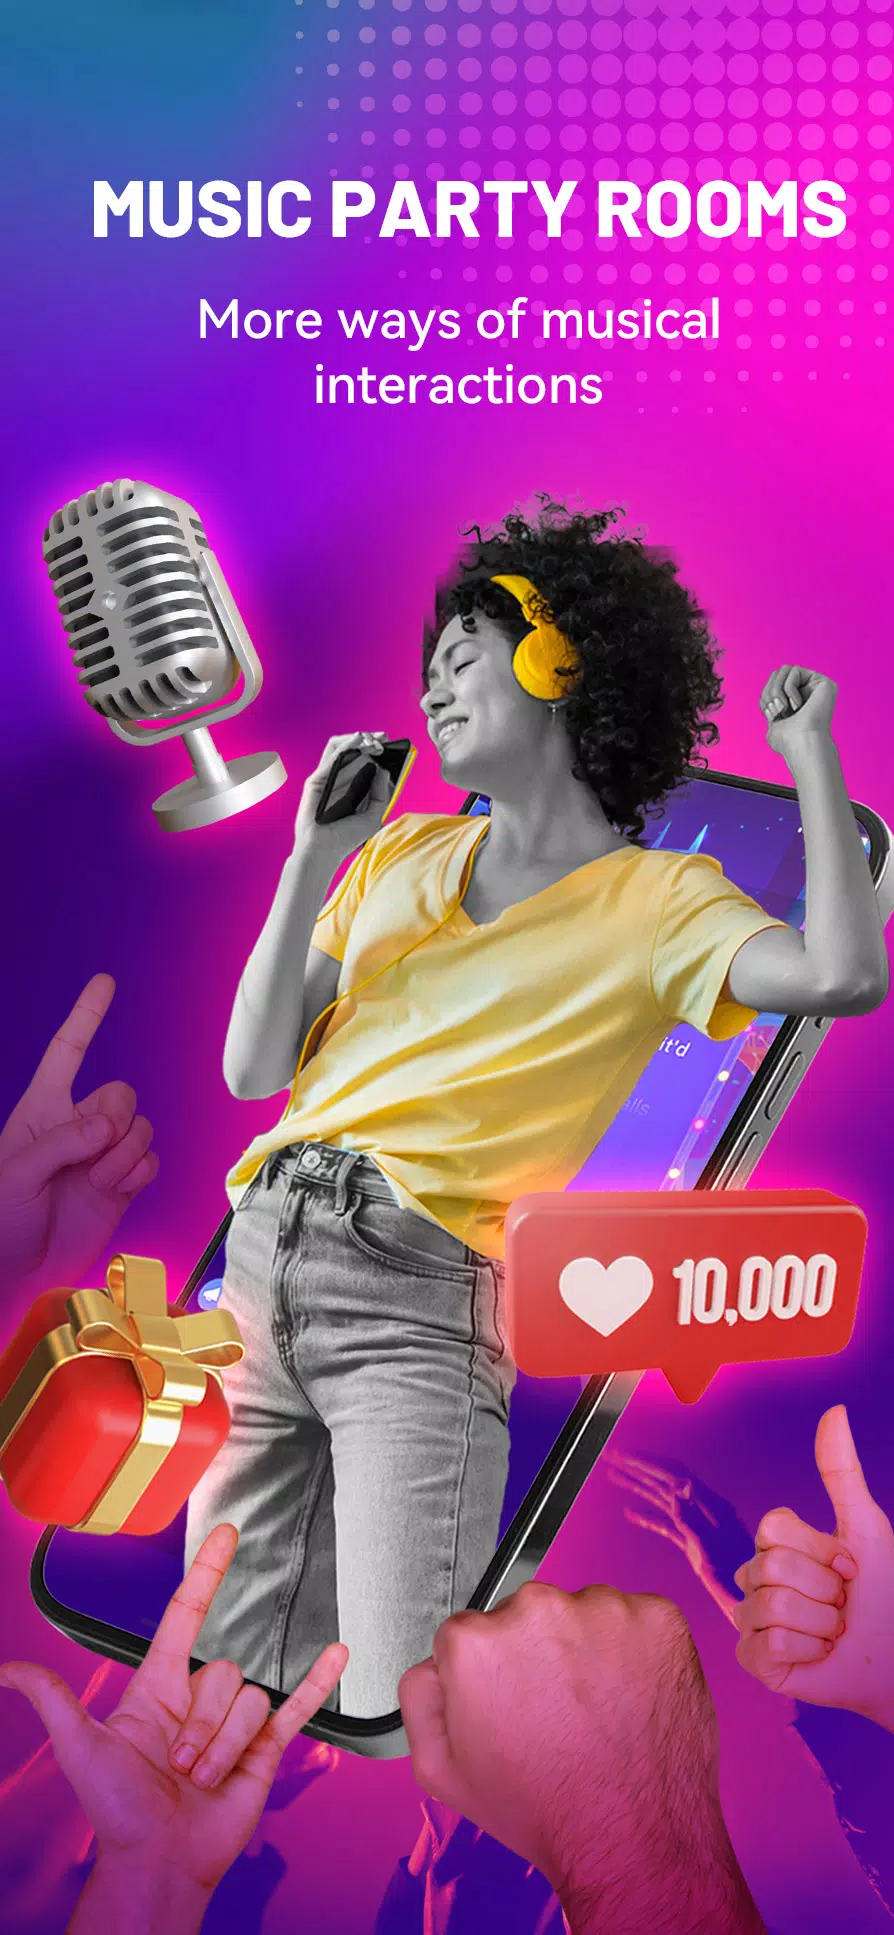 StarMaker: Sing free Karaoke, Record music videos Screenshot3